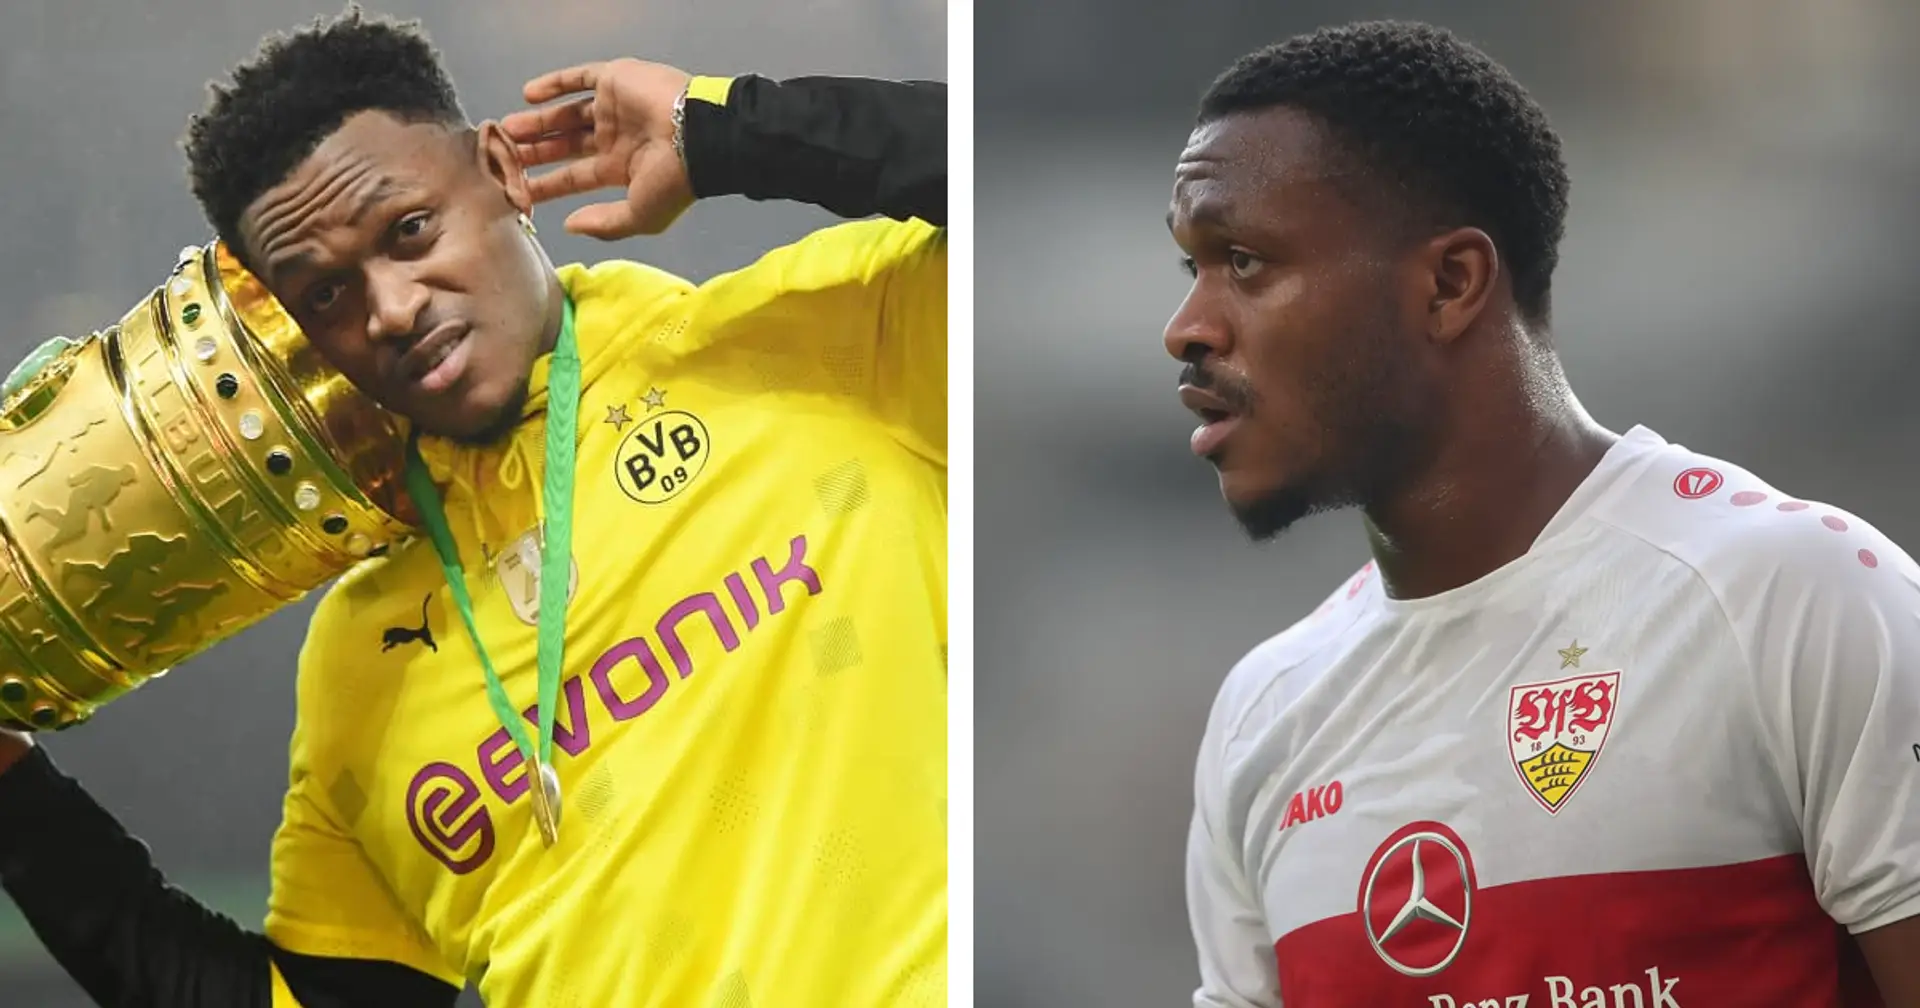 "War nicht so einfach": Zagadou blickt vor Wiedersehen mit Dortmund auf seine BVB-Zeit zurück